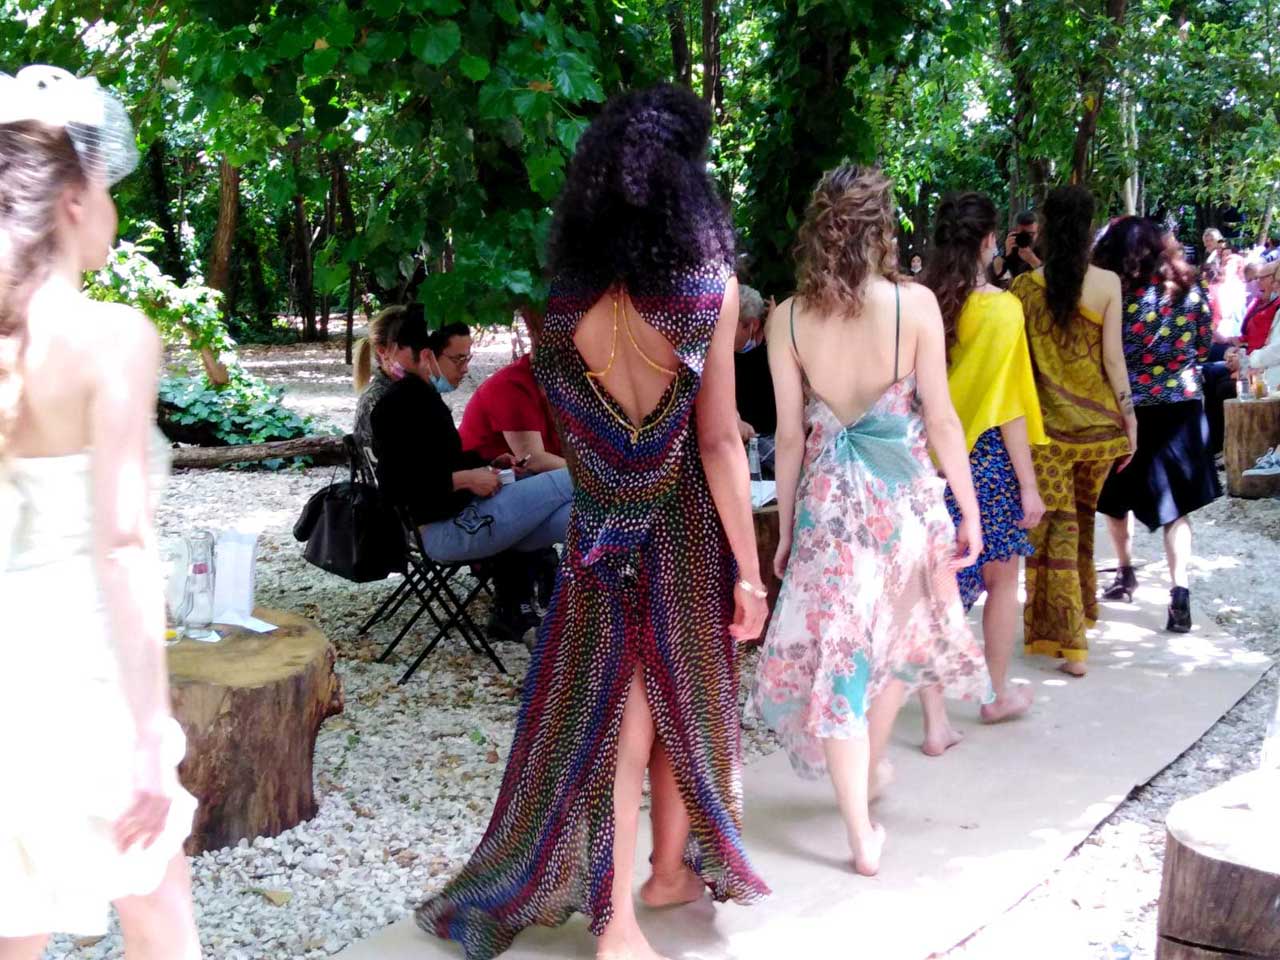 A piedi nudi nel bosco - Eleonora Giamberduca abbigliamento cerimonia sposa abiti su misura idee moda donna foto ragazze al Wood Natural Bar di Roma foto18 - ragazze sfilano in abiti con fantasia di colori